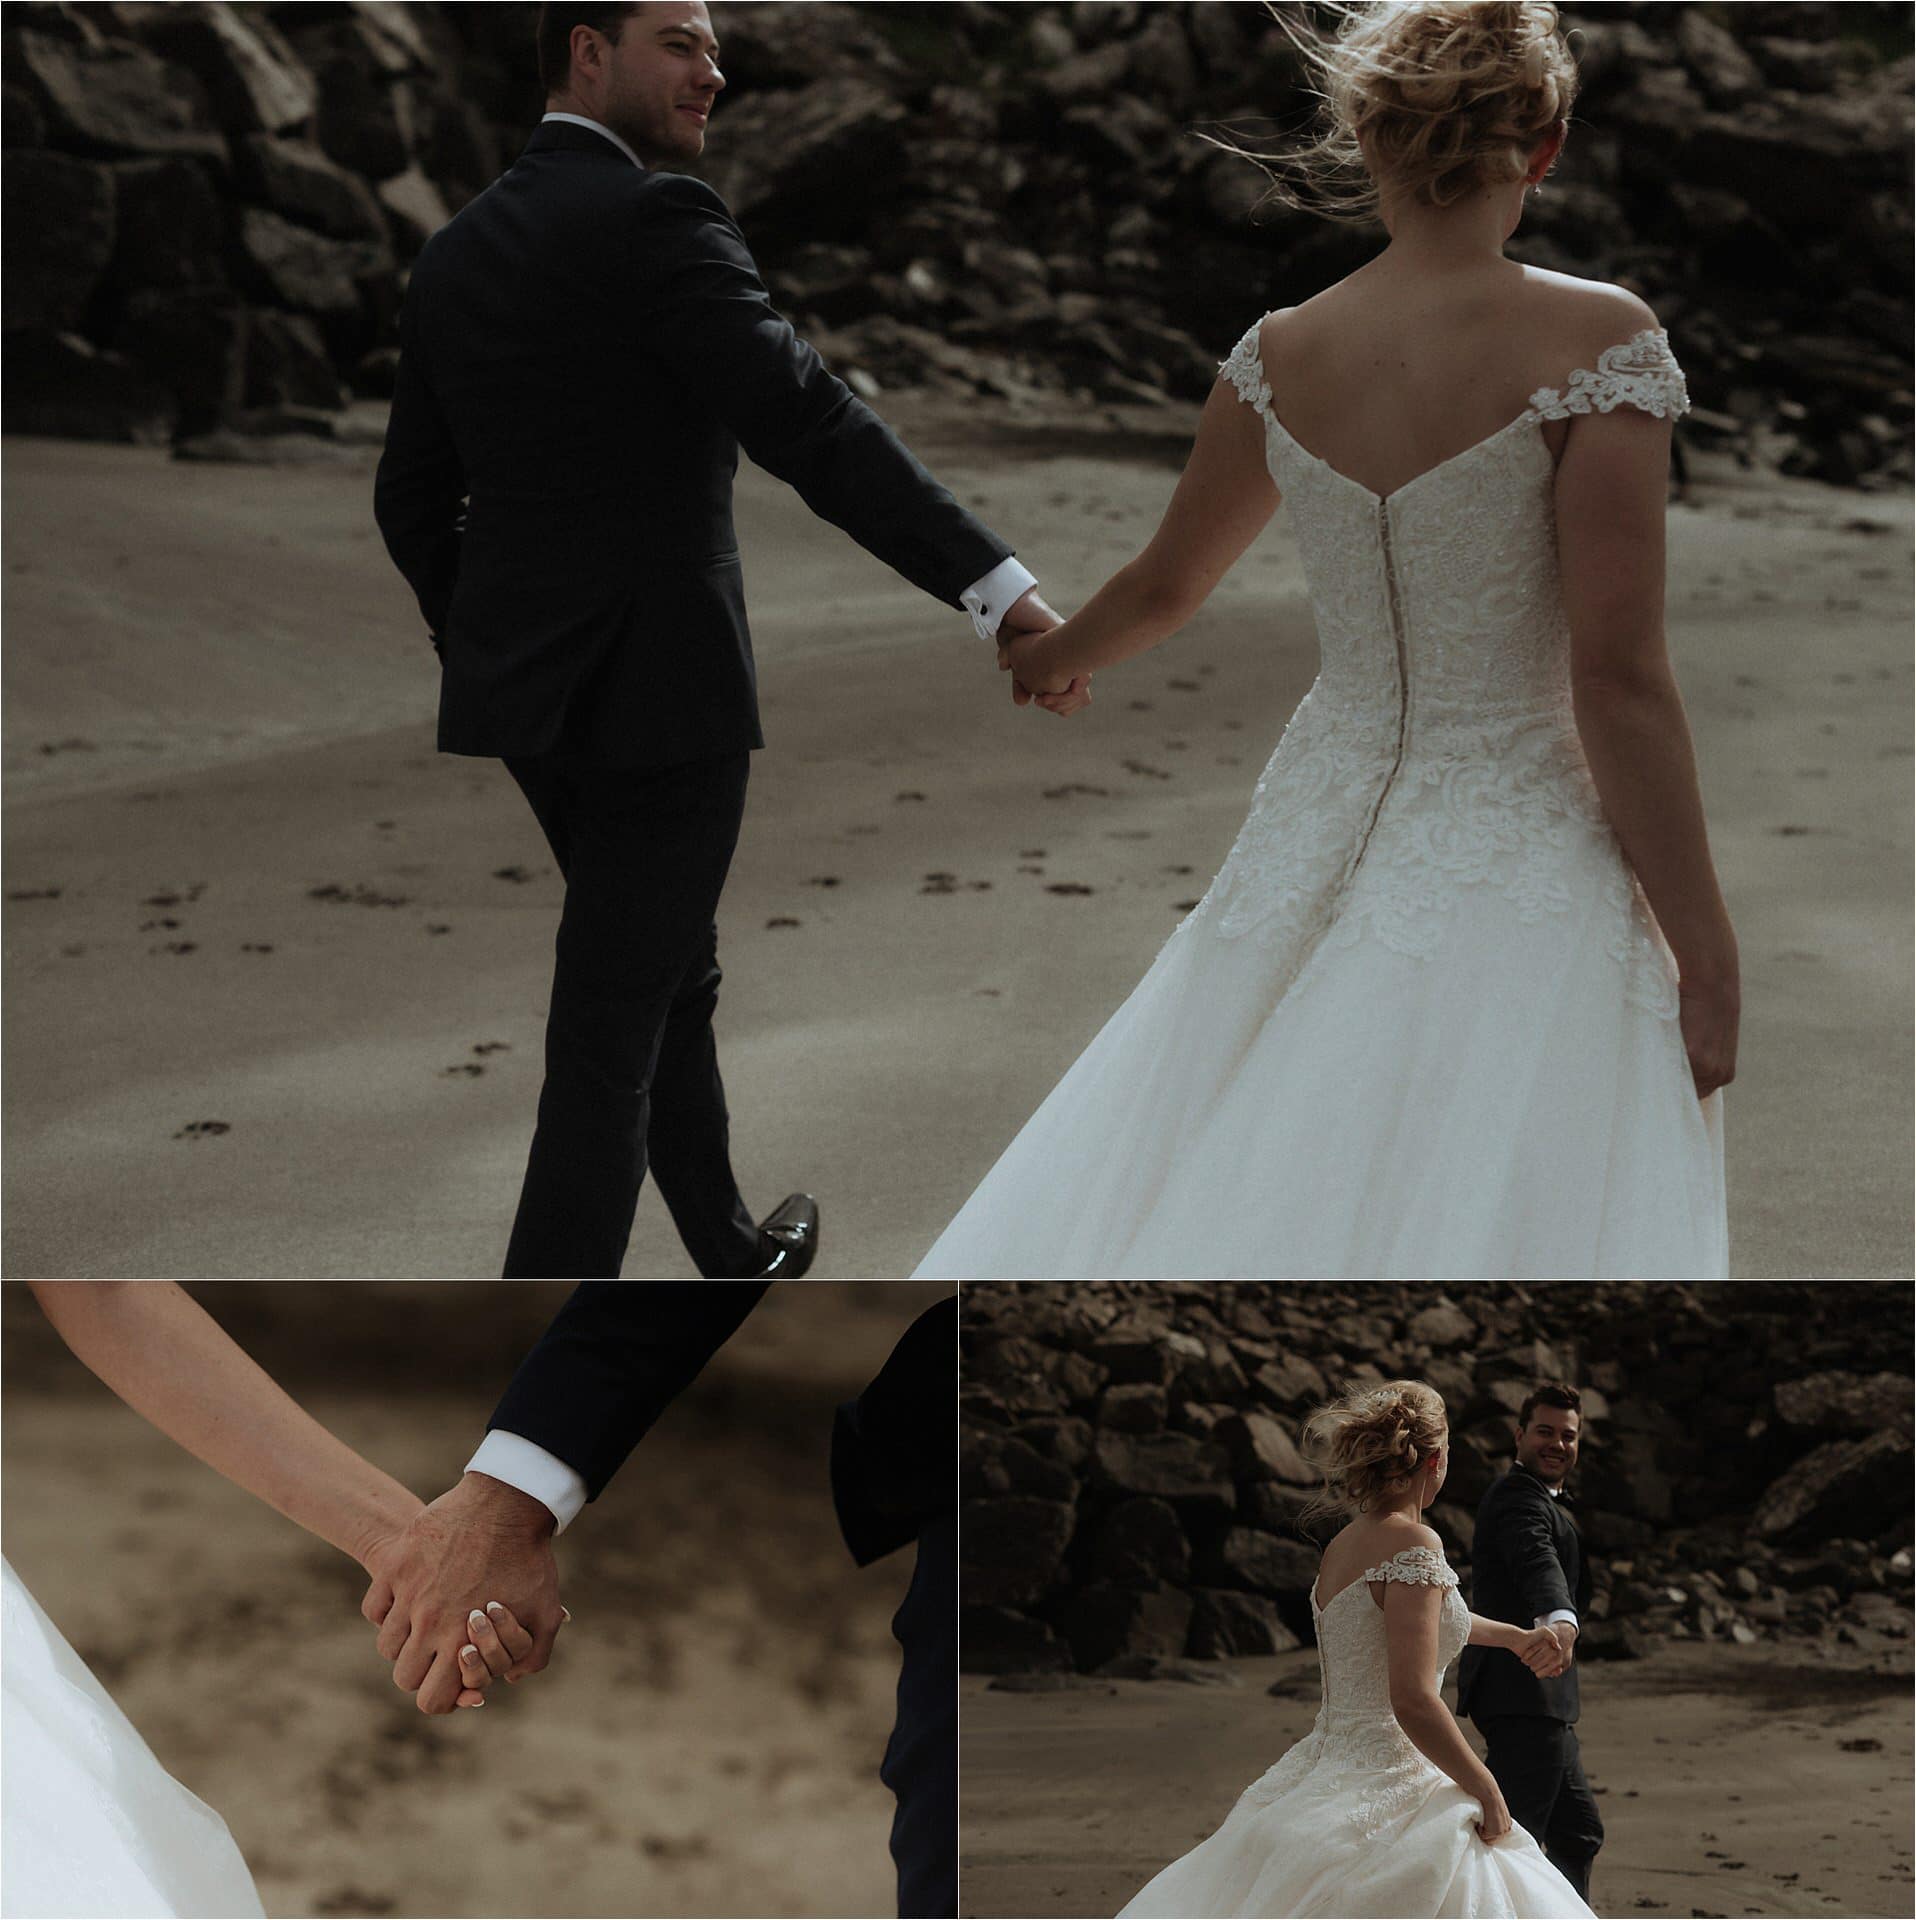 staffin beach elopement